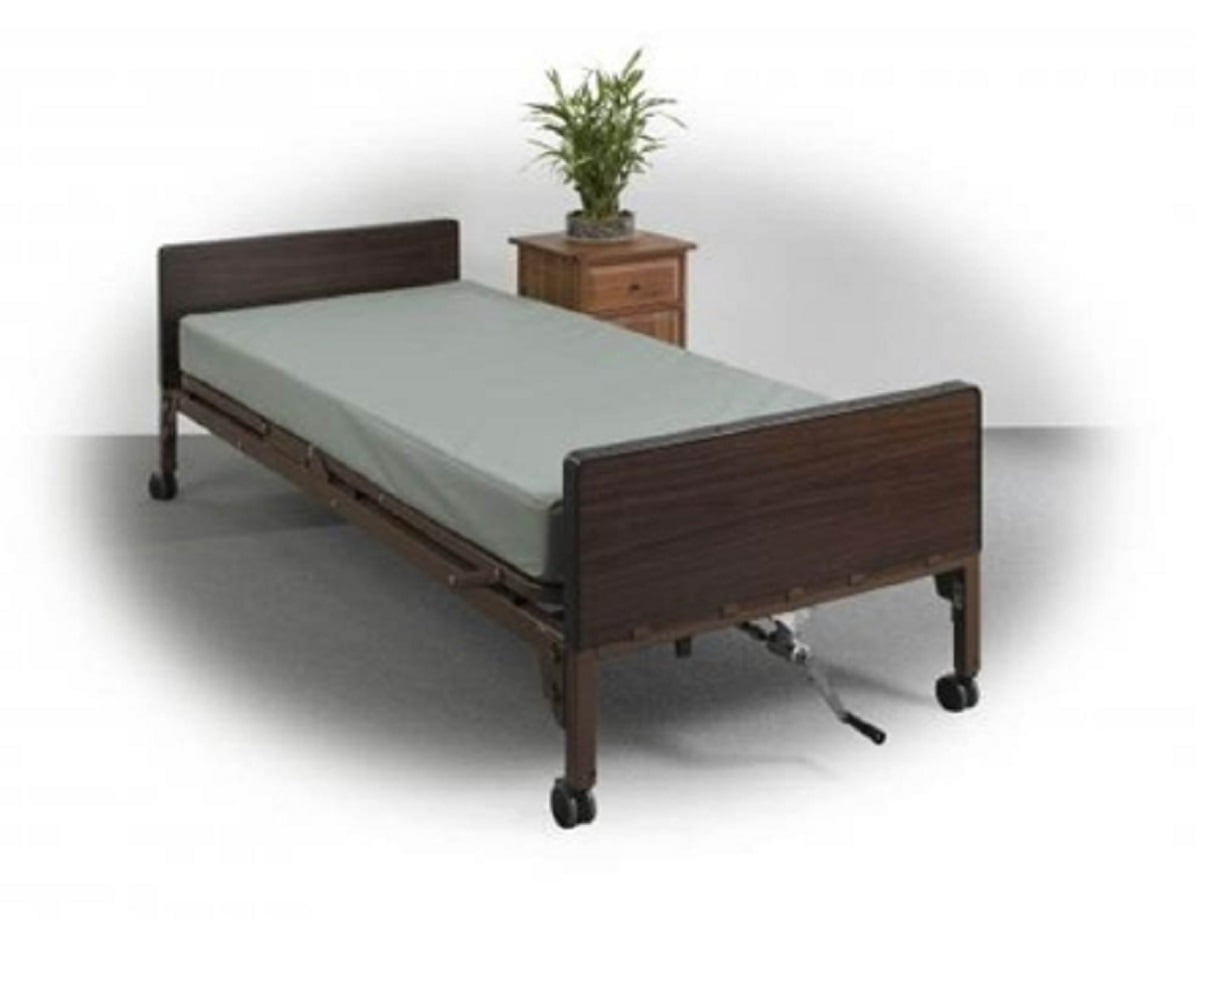 ease comfort mattress review